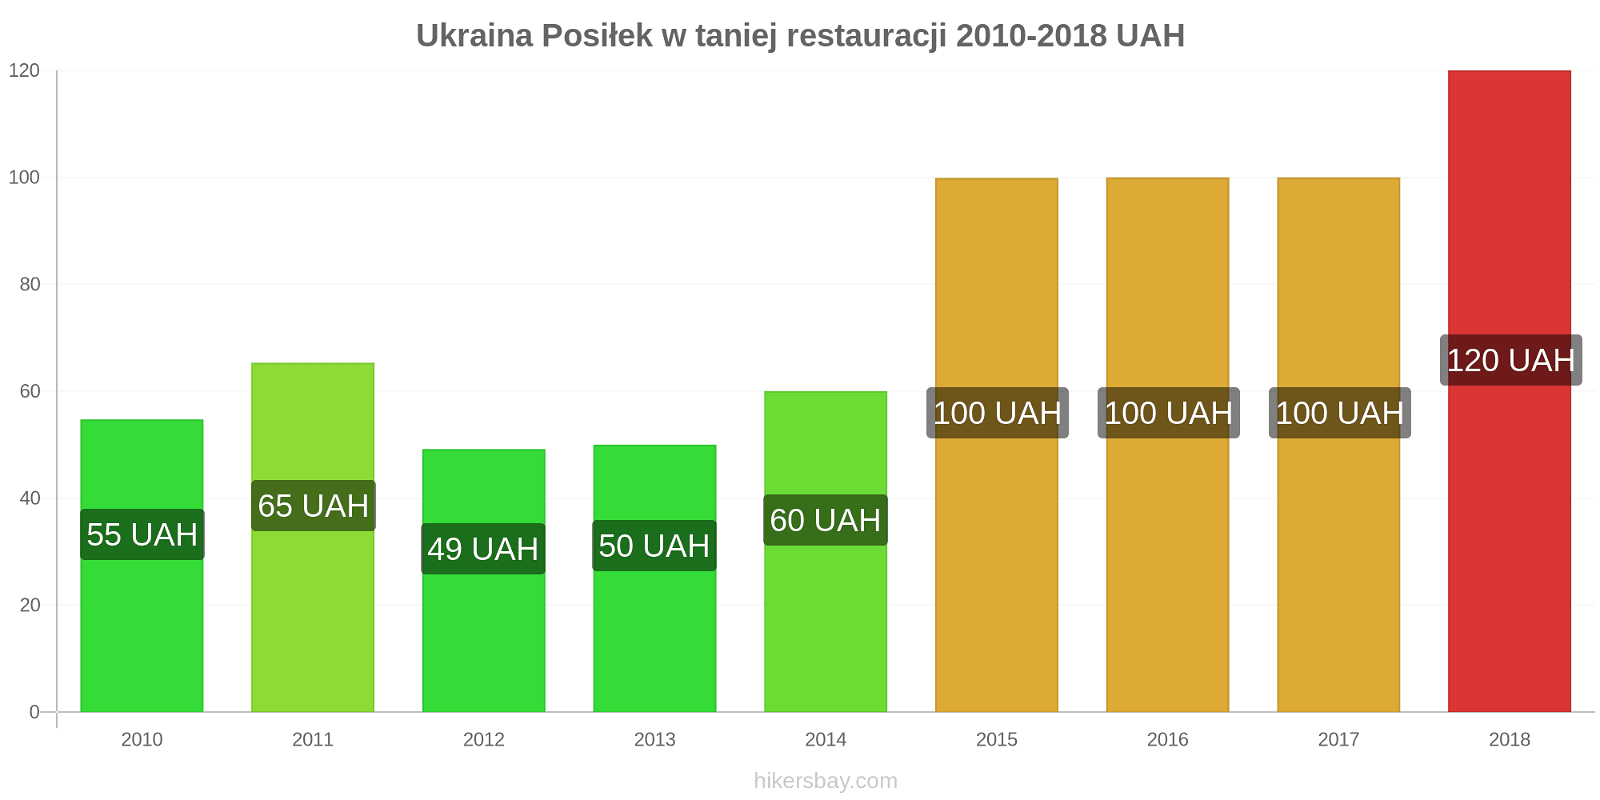 Ukraina zmiany cen Posiłek w taniej restauracji hikersbay.com